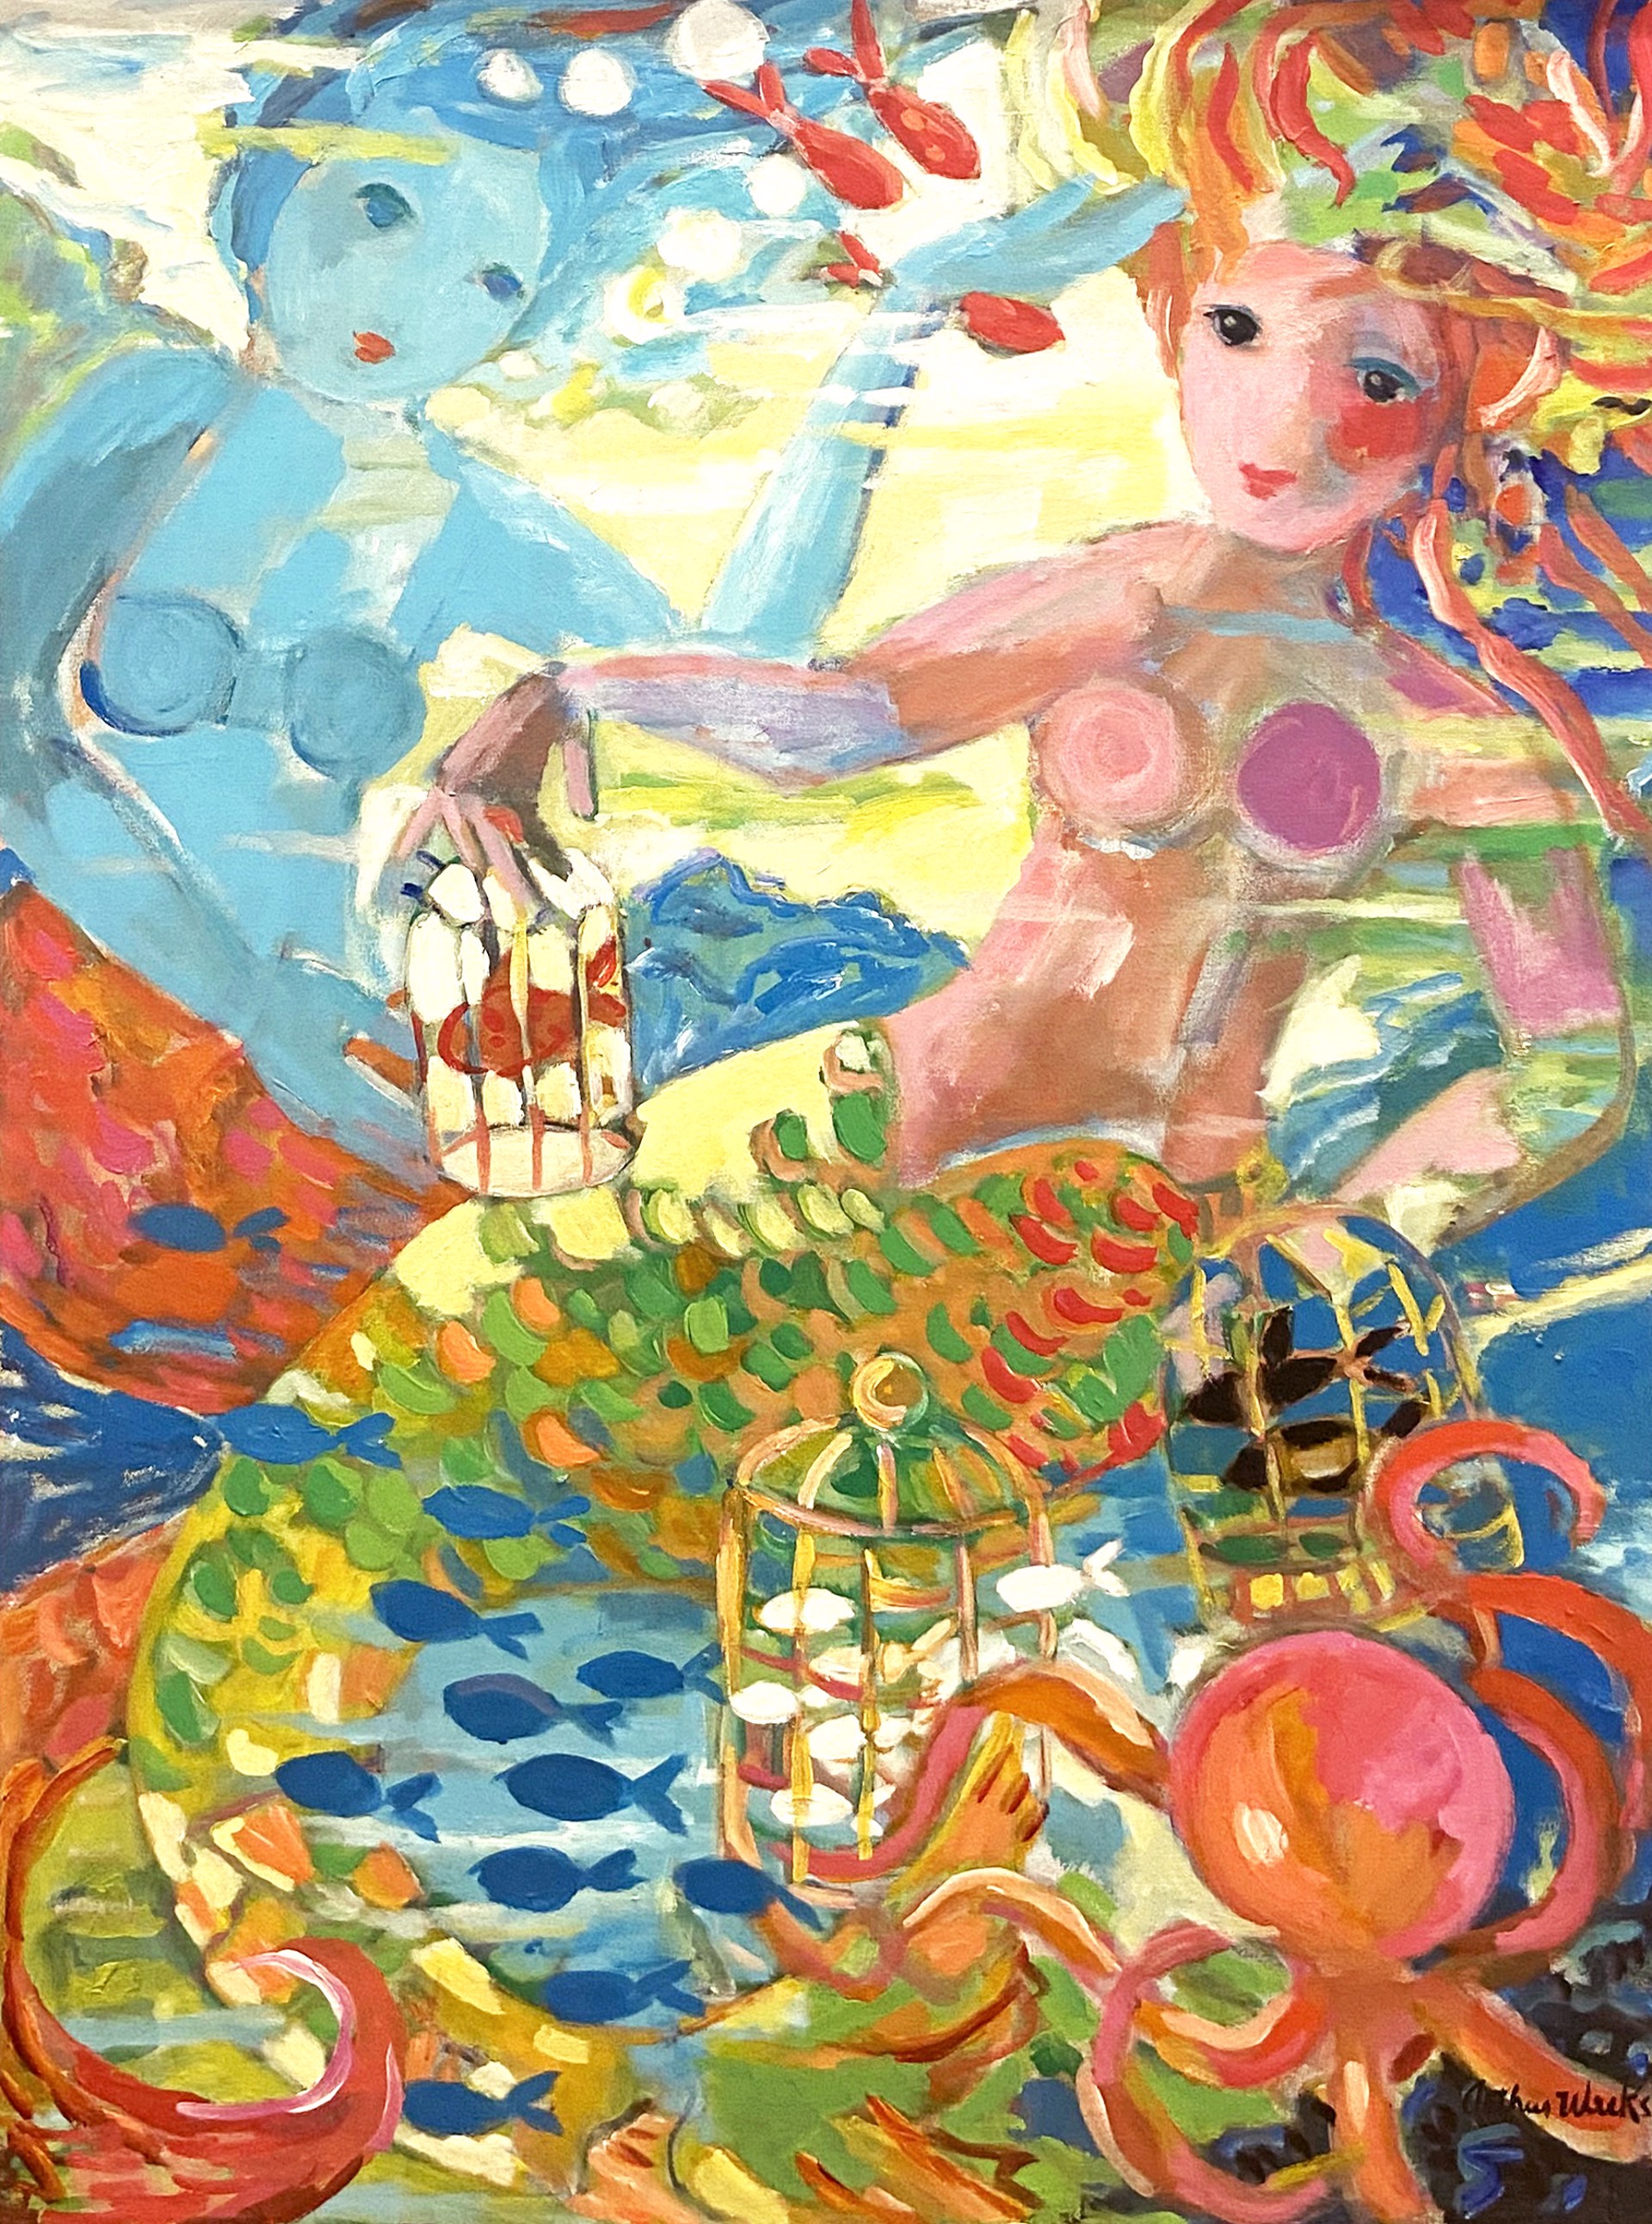 Mermaids by Arthur Weeks